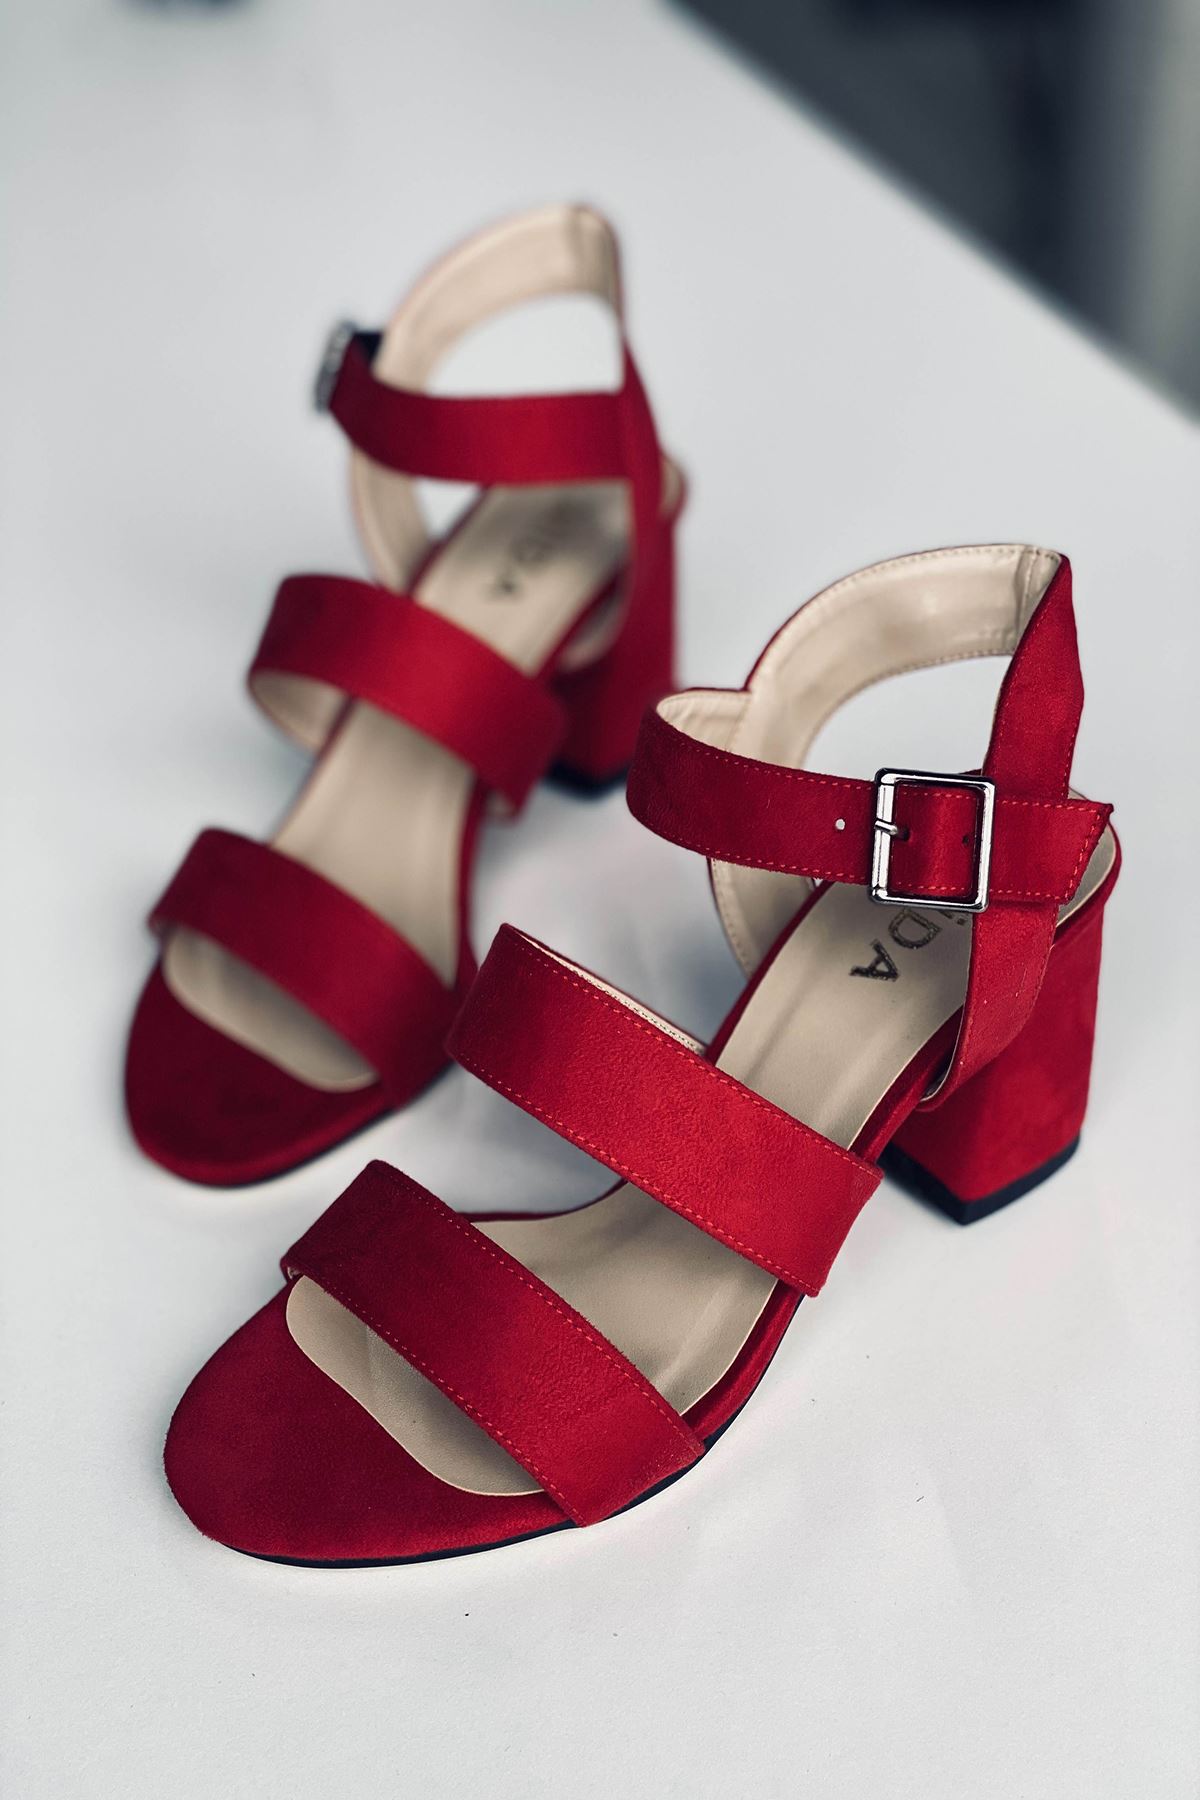 Mida Shoes Y612 Kırmızı Süet Topuklu Ayakkabı